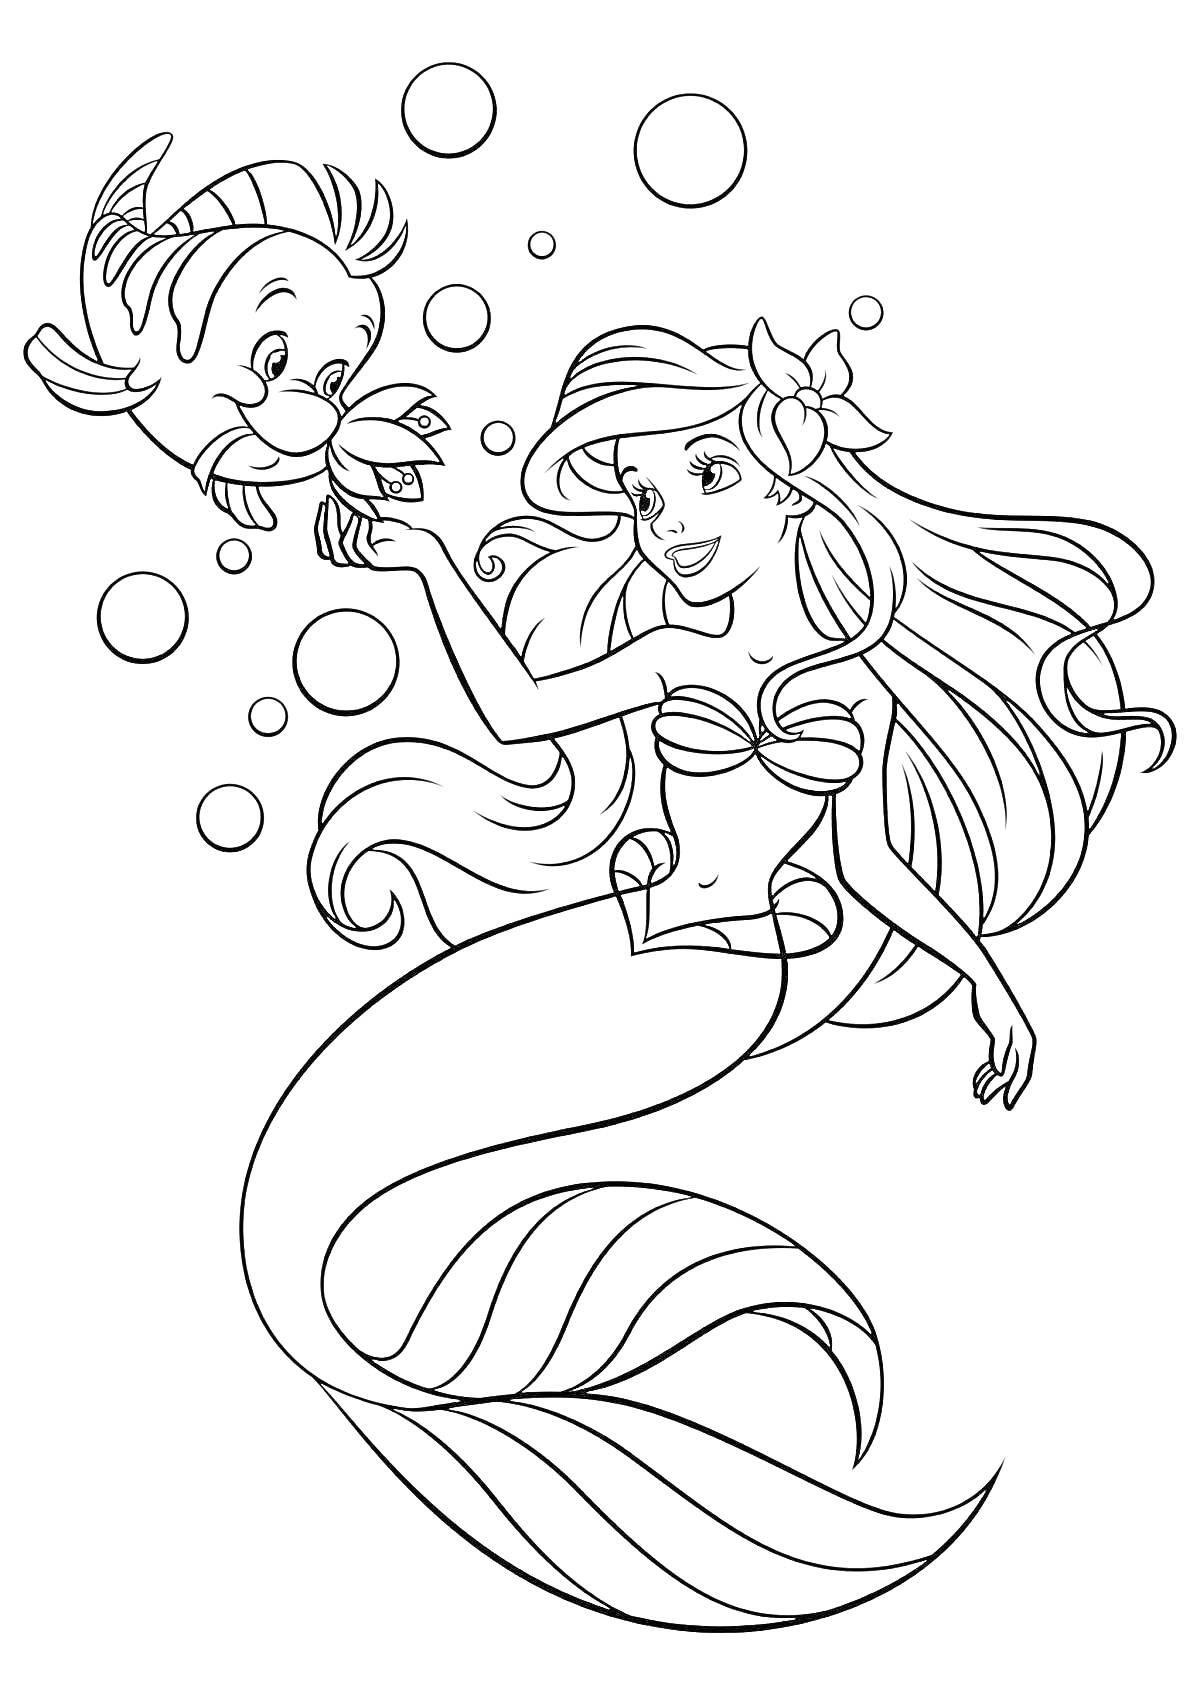 Раскраска Русалочка с цветком в волосах и рыбкой, пузыри в воде